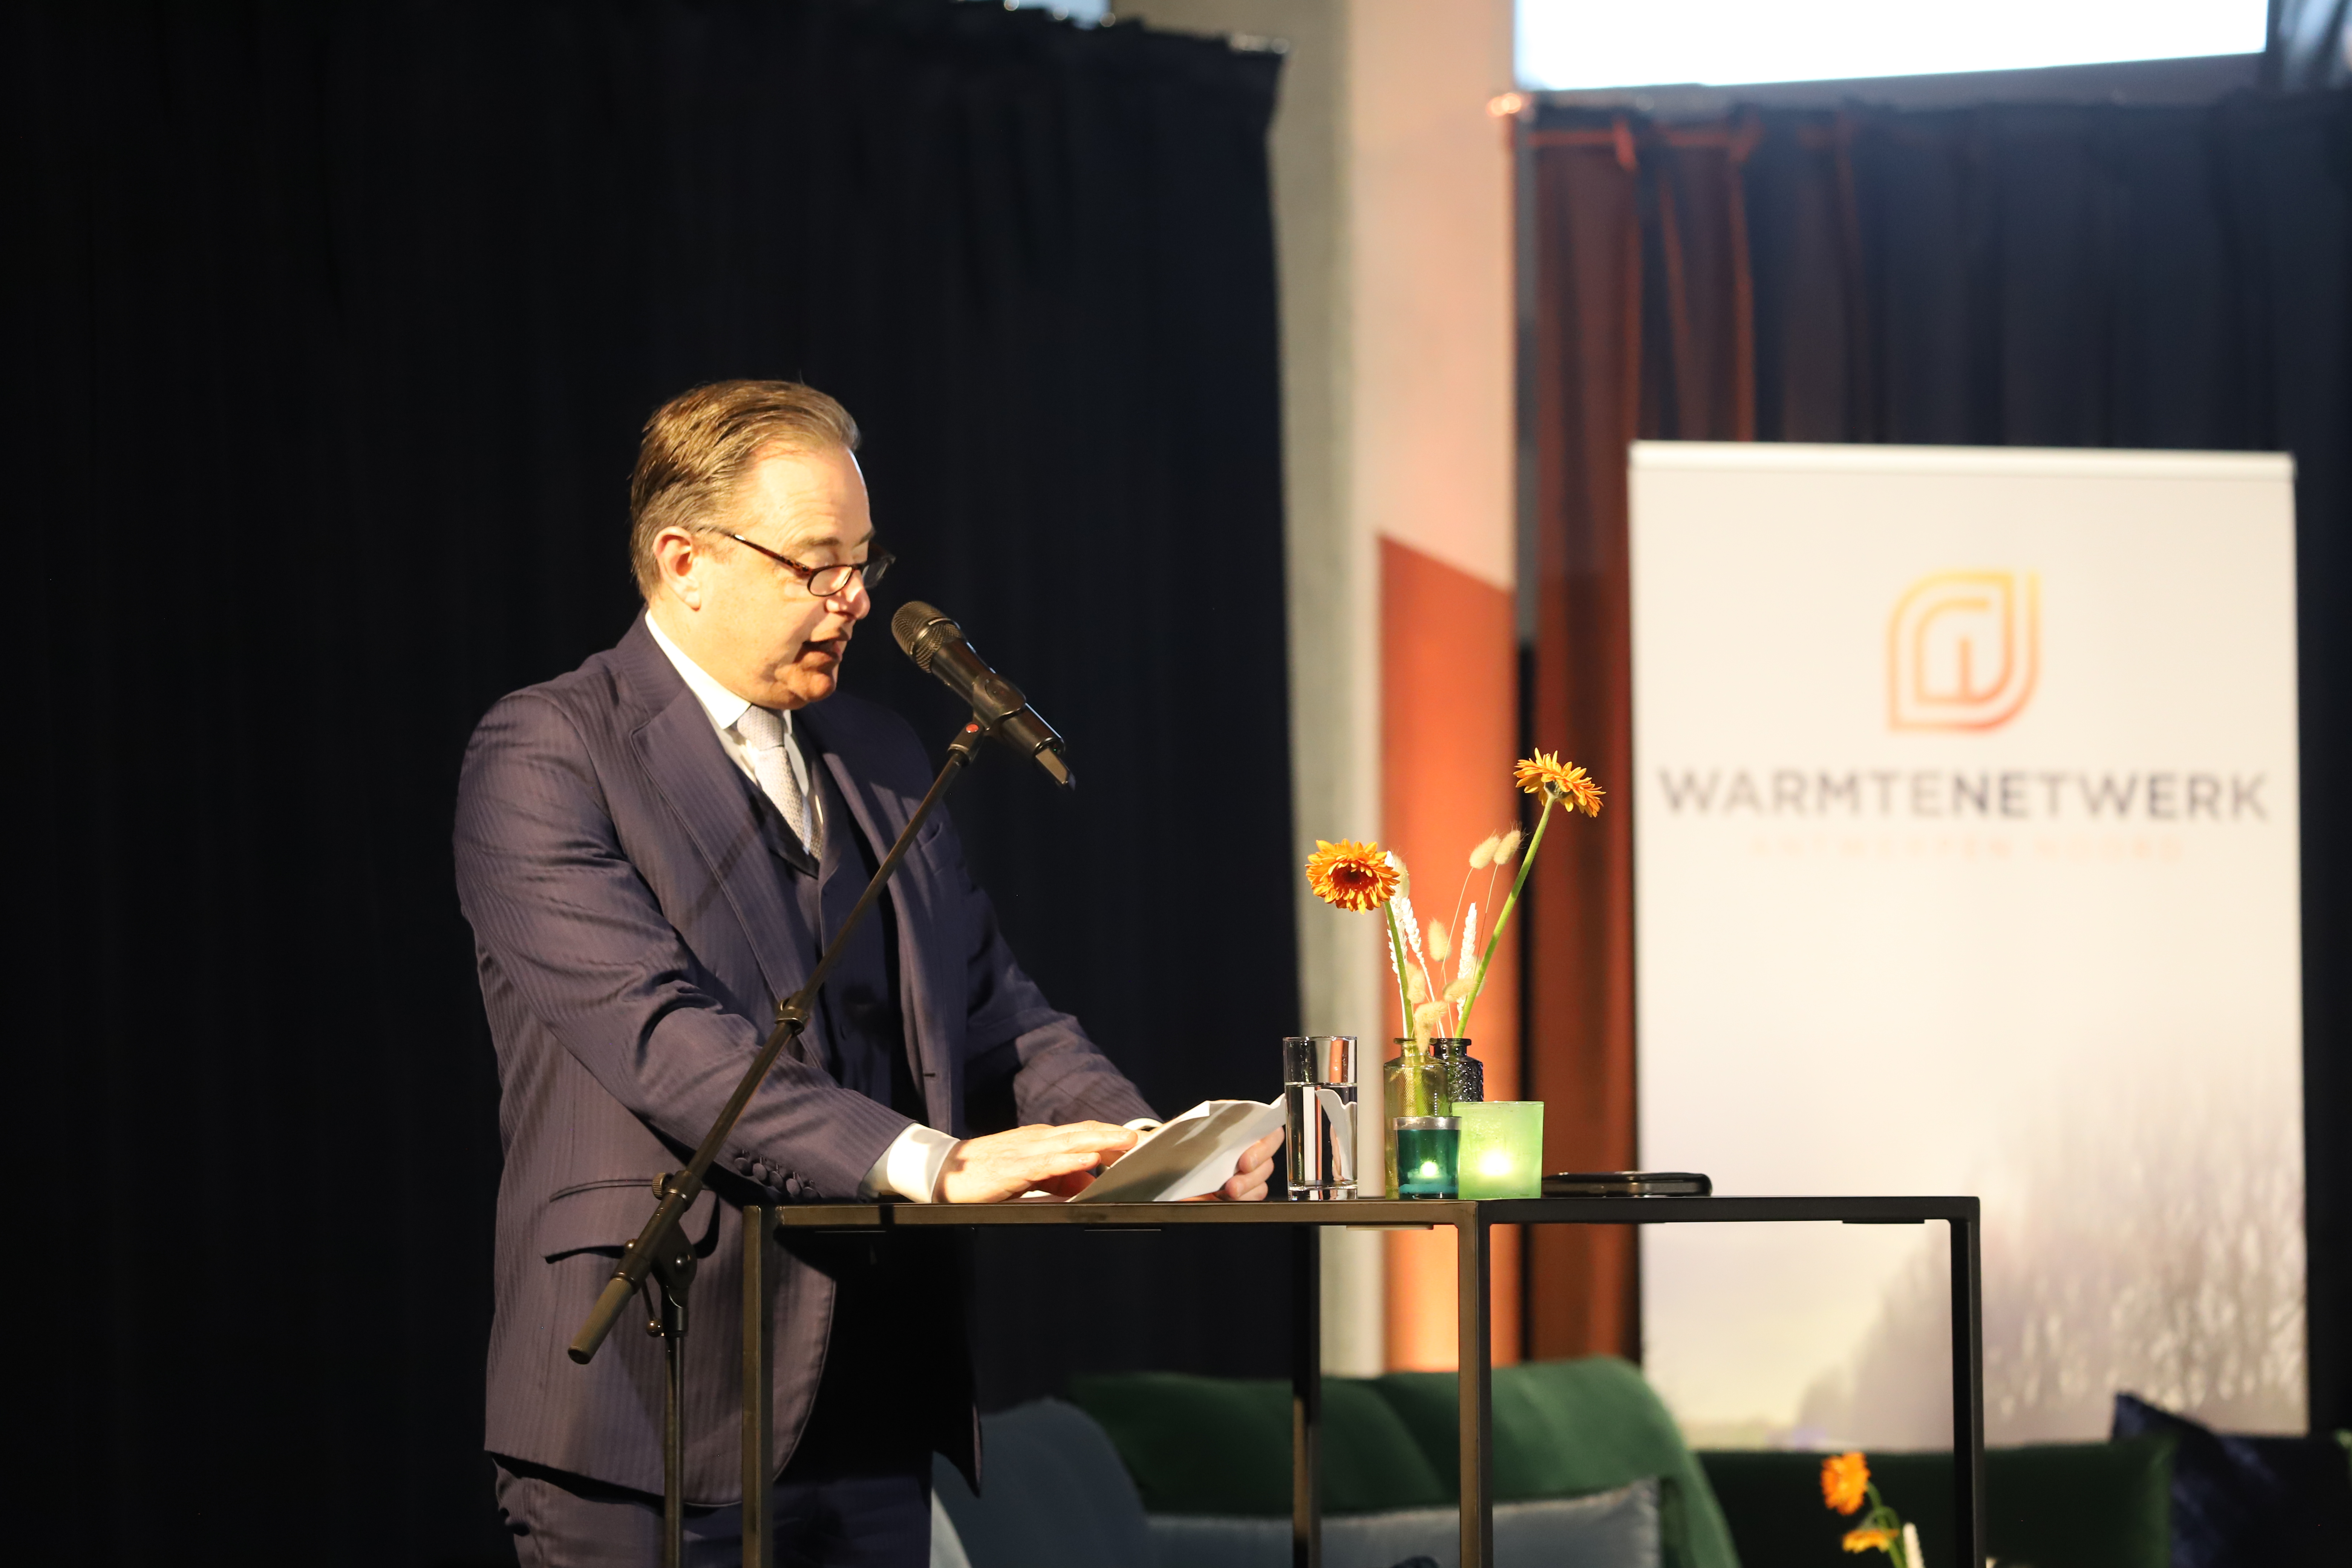 Bart de Wever Inauguration North Antwerp Heatloop Wartenetwerk